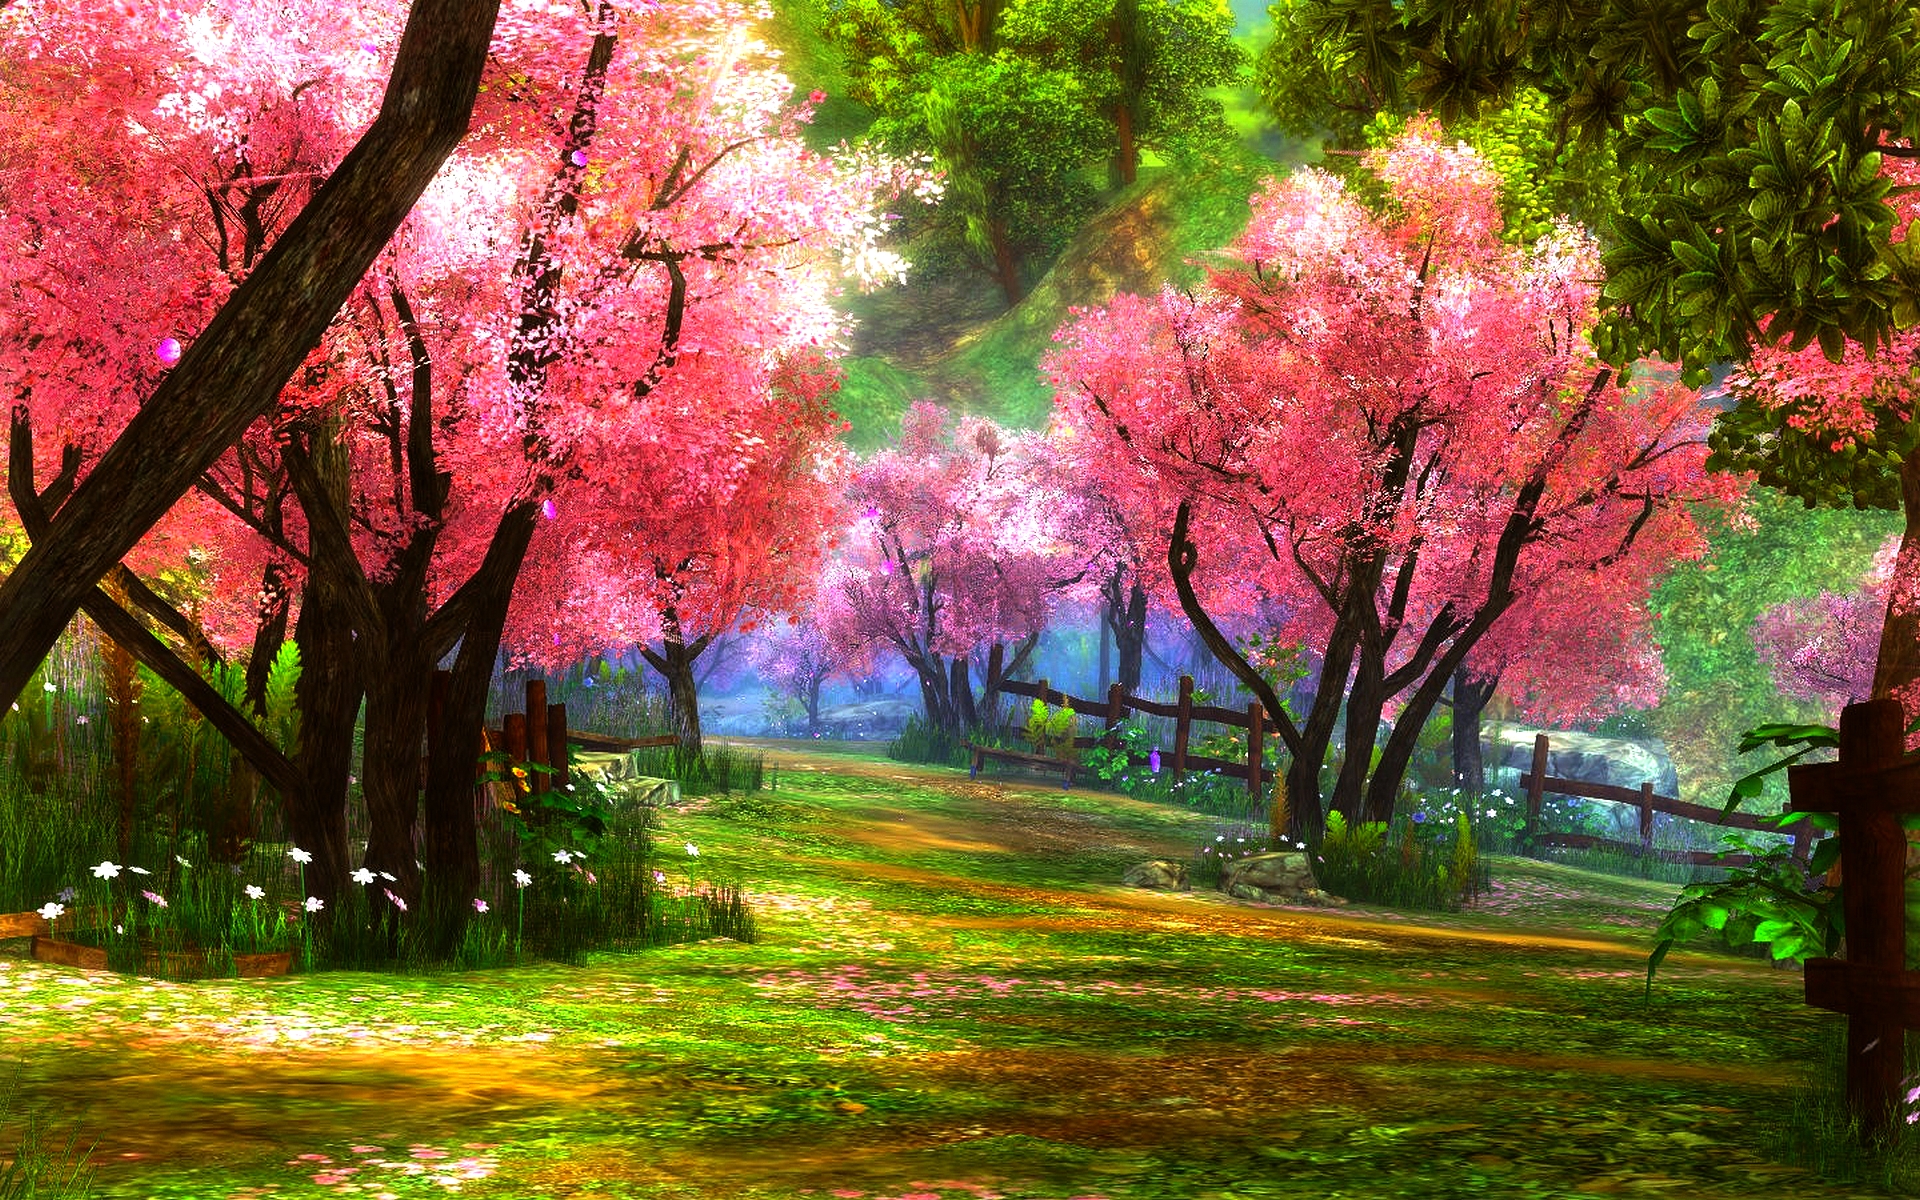 Mùa xuân đã đến và cây hoa anh đào hồng đang nở rộ trong sắc thái tươi mới rực rỡ! Điểm danh một trong những loài hoa được yêu thích nhất của Nhật Bản qua những hình ảnh đẹp lung linh. Hãy trầm mình trong khung cảnh ngọt ngào và thơ mộng này.